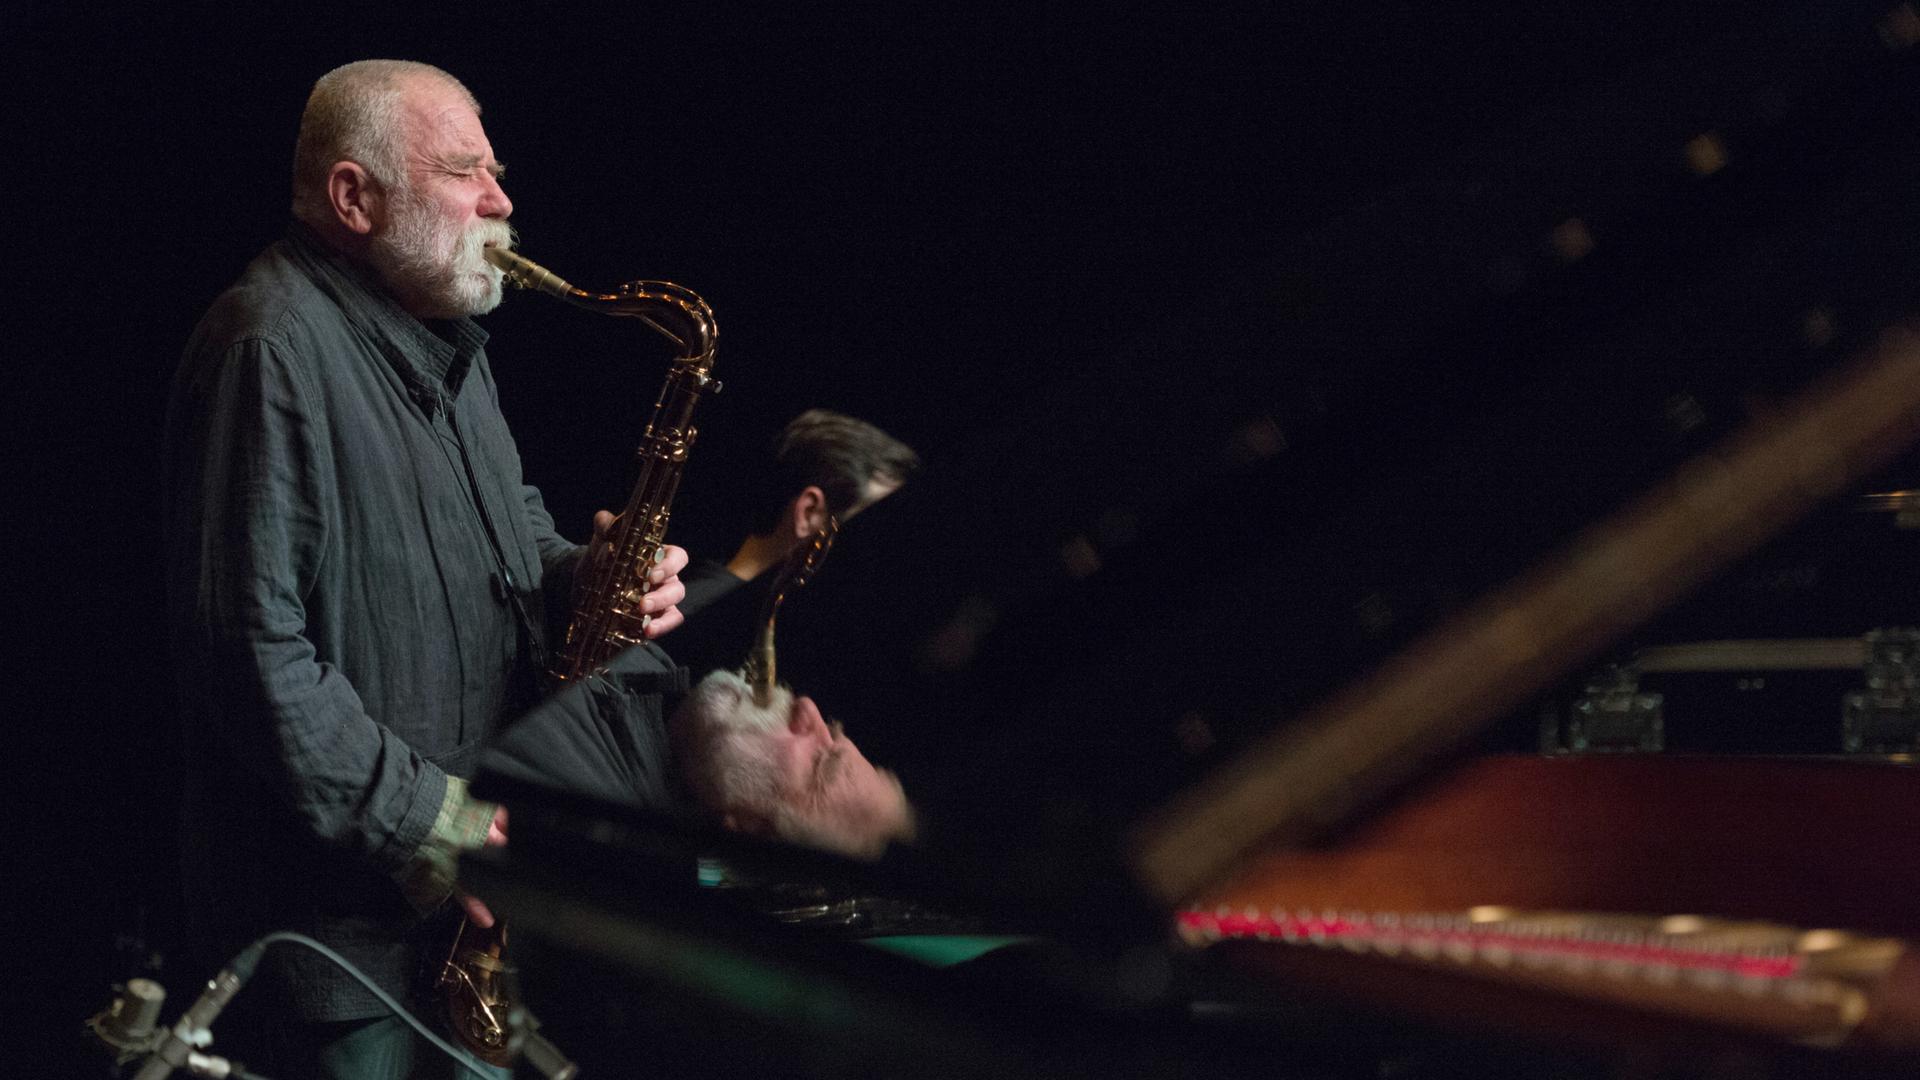 Der deutsche Jazzmusiker Peter Brötzmann auf einer dunklen Bühne und spielt Saxophon. Teile von ihm spiegeln sich in dem Flügel, der vor ihm auf der Bühne steht.